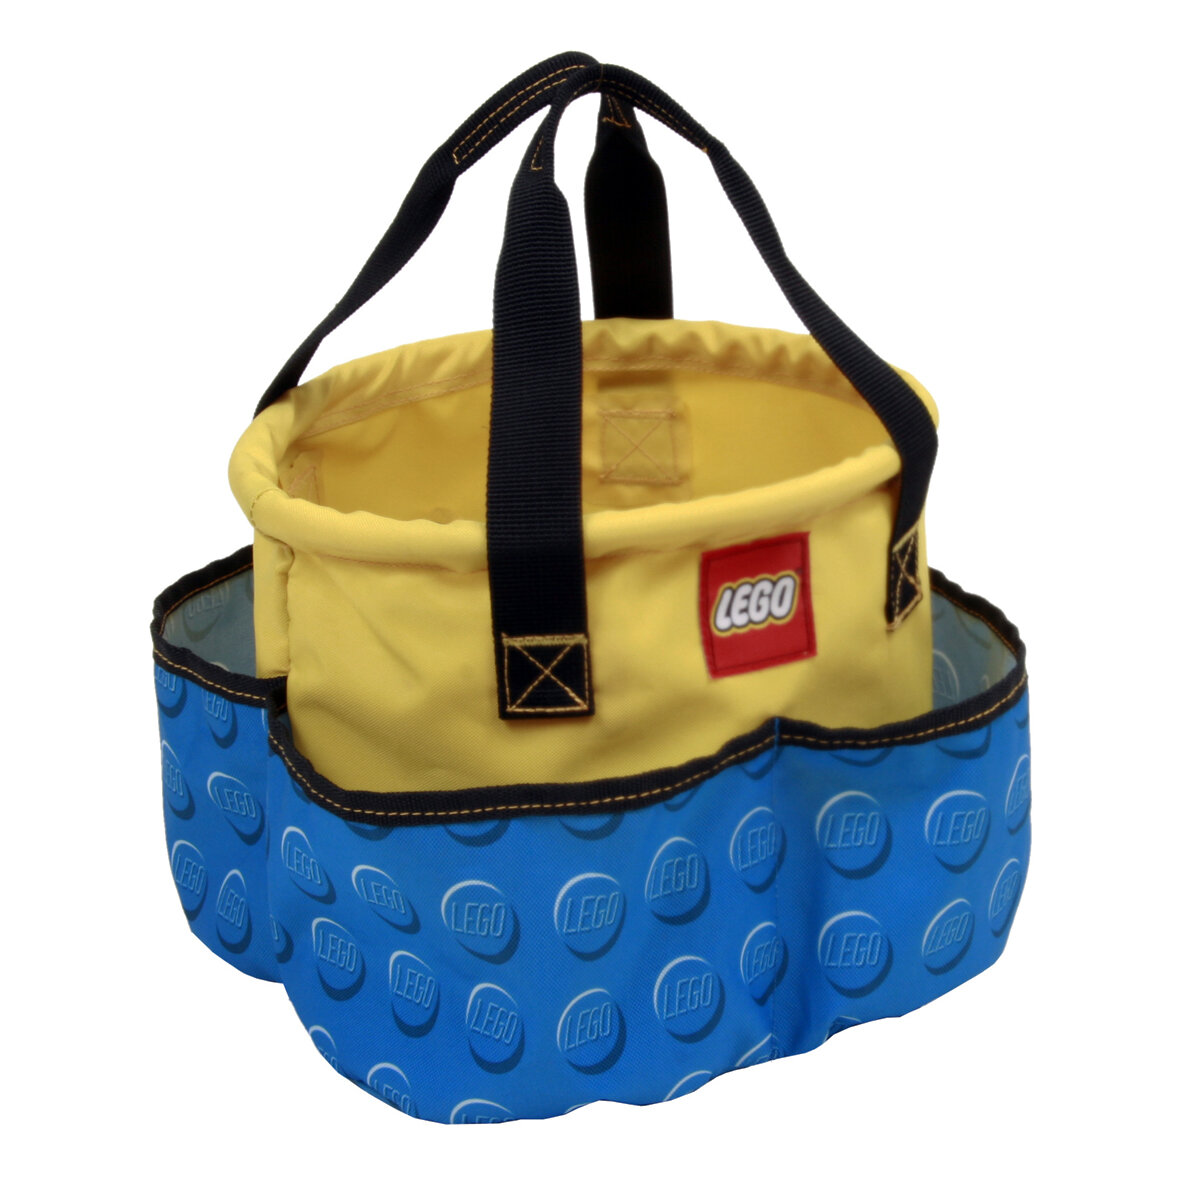 LEGO Lego Storage Cinch Bucket, Blue - Décor 